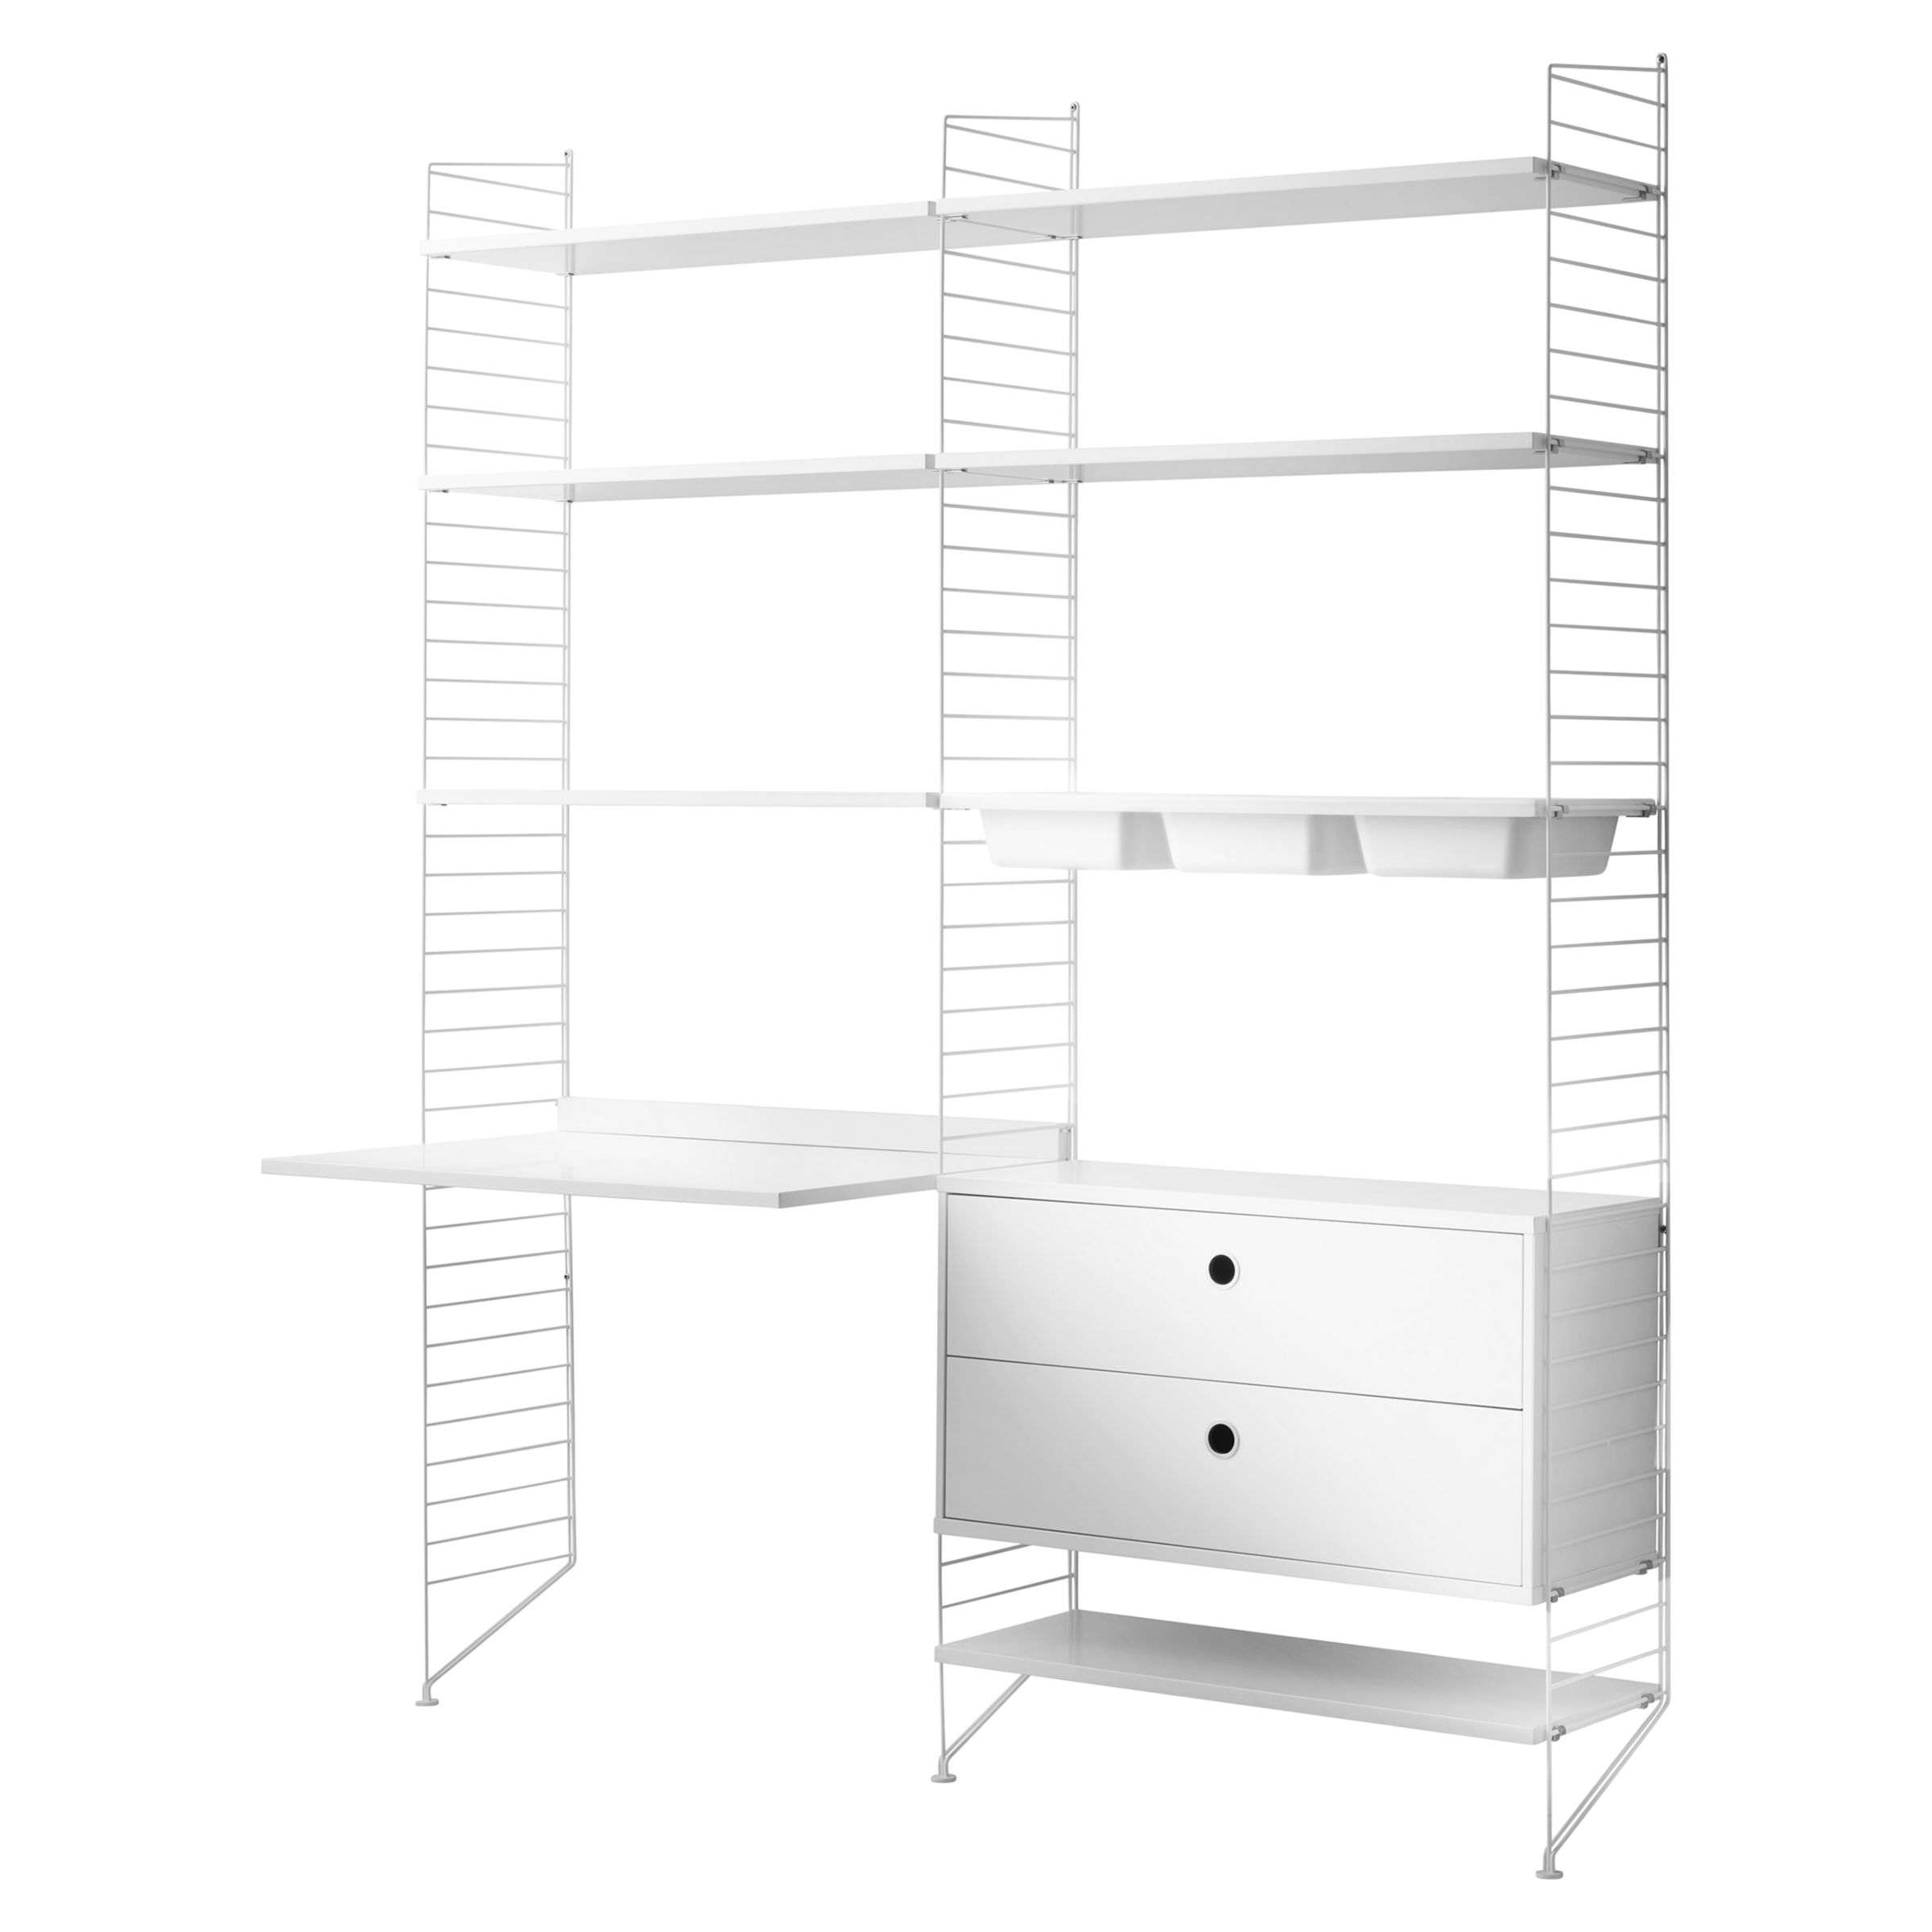 Desk Shelves 2 Drawer Chest, Horizontal Shelving Unit